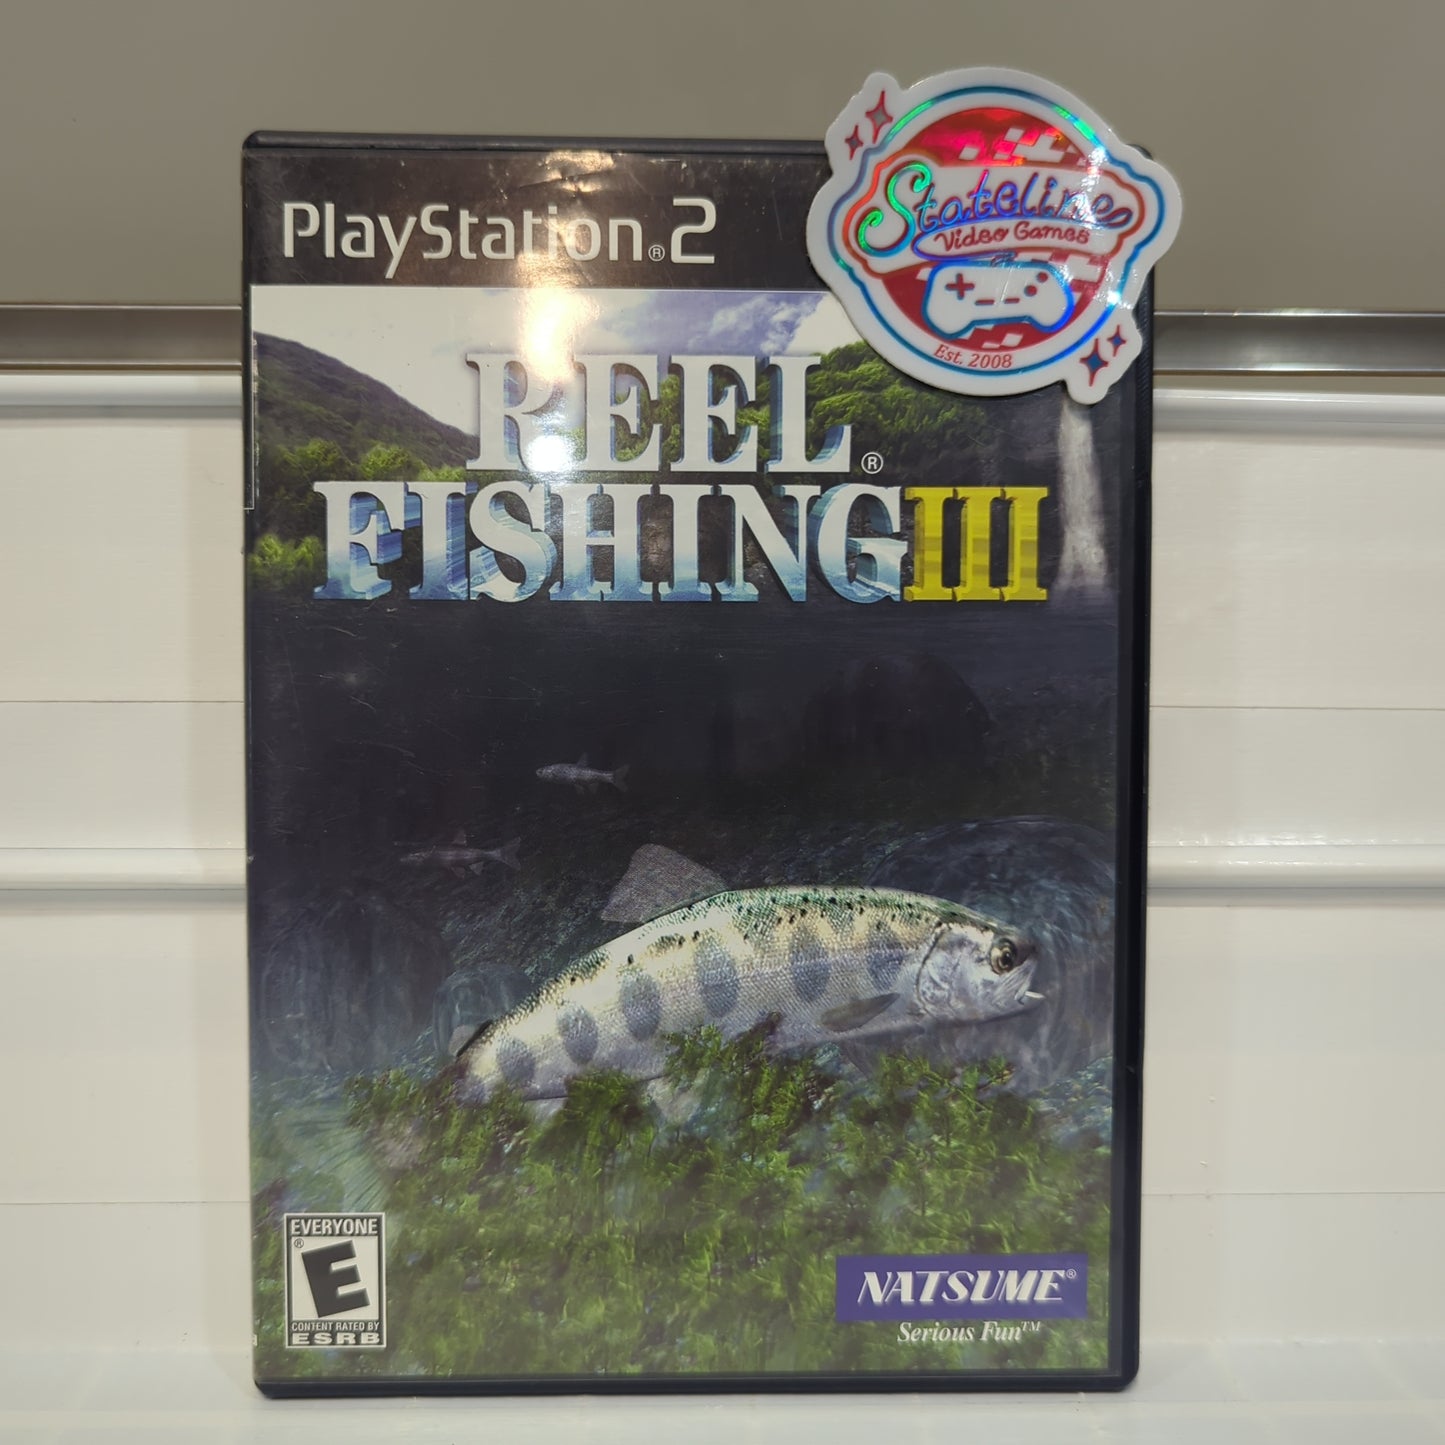 Reel Fishing III - Playstation 2